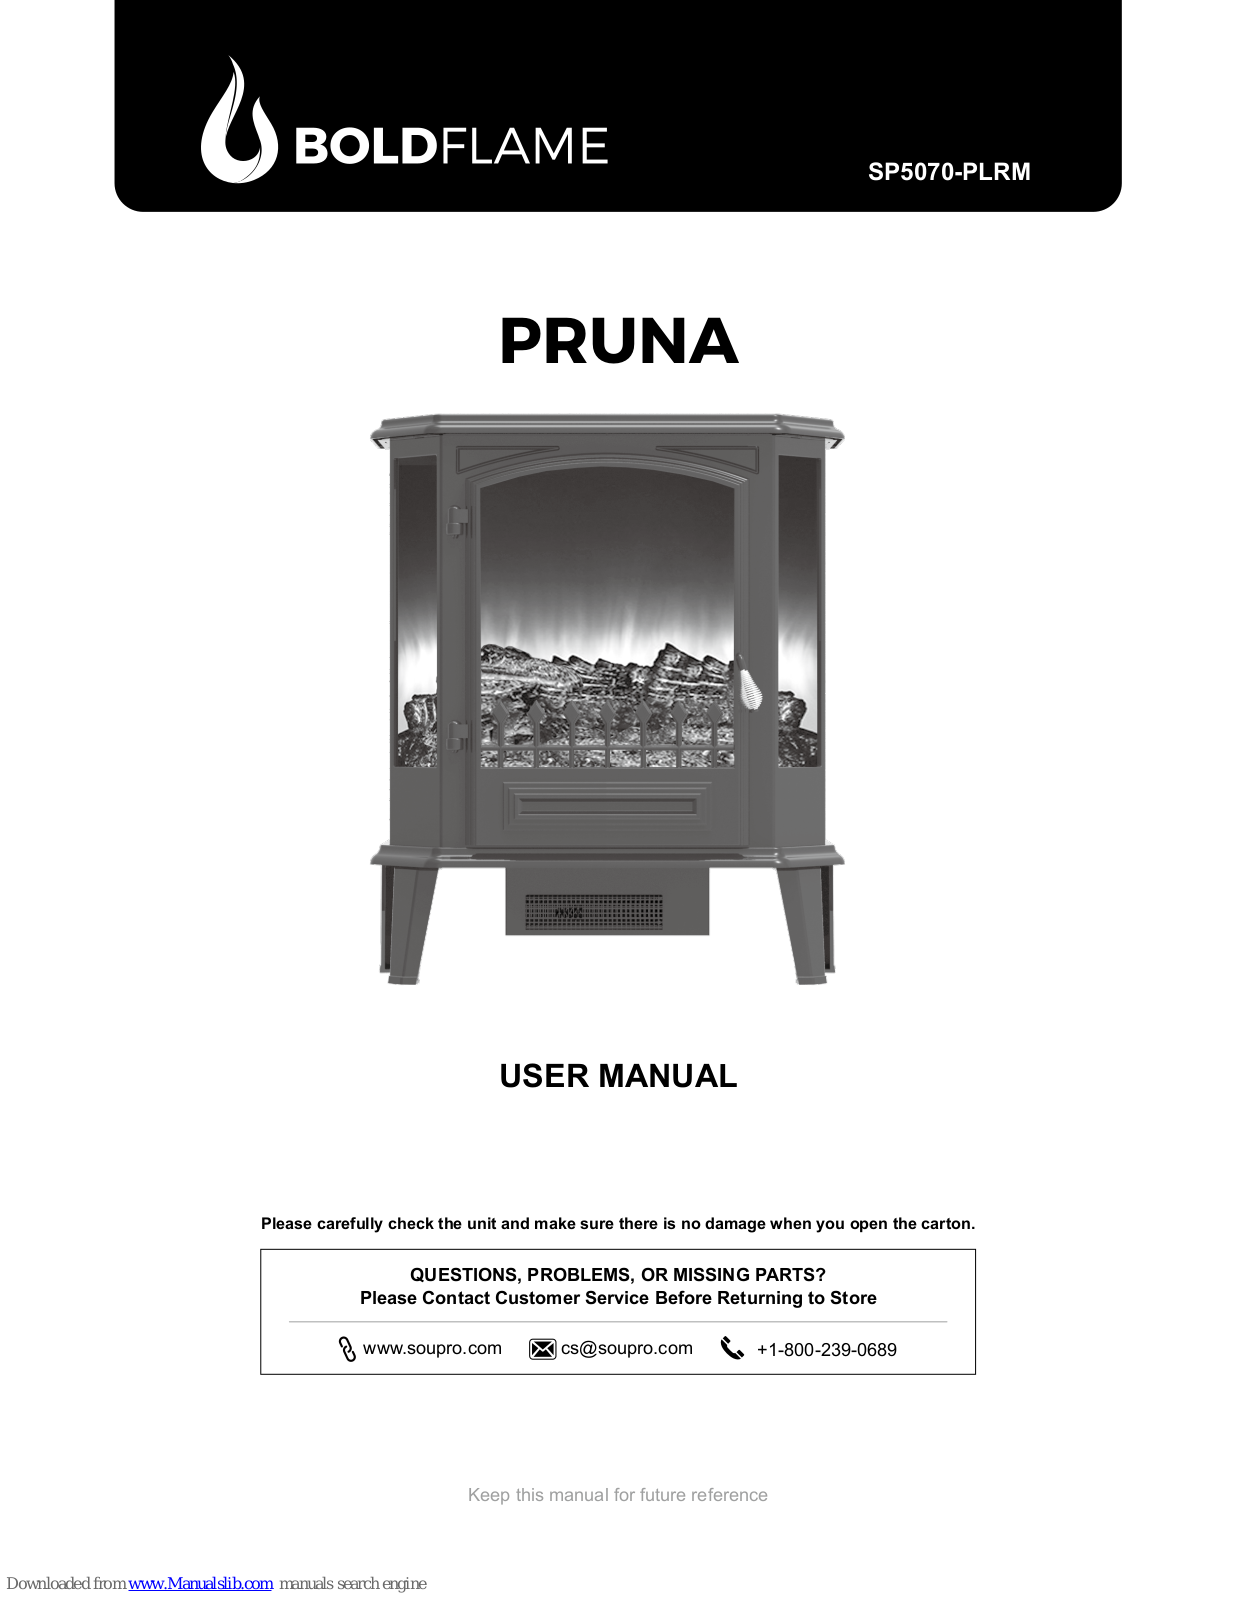 Bold Flame PRUNA, SP5070-PLRM User Manual